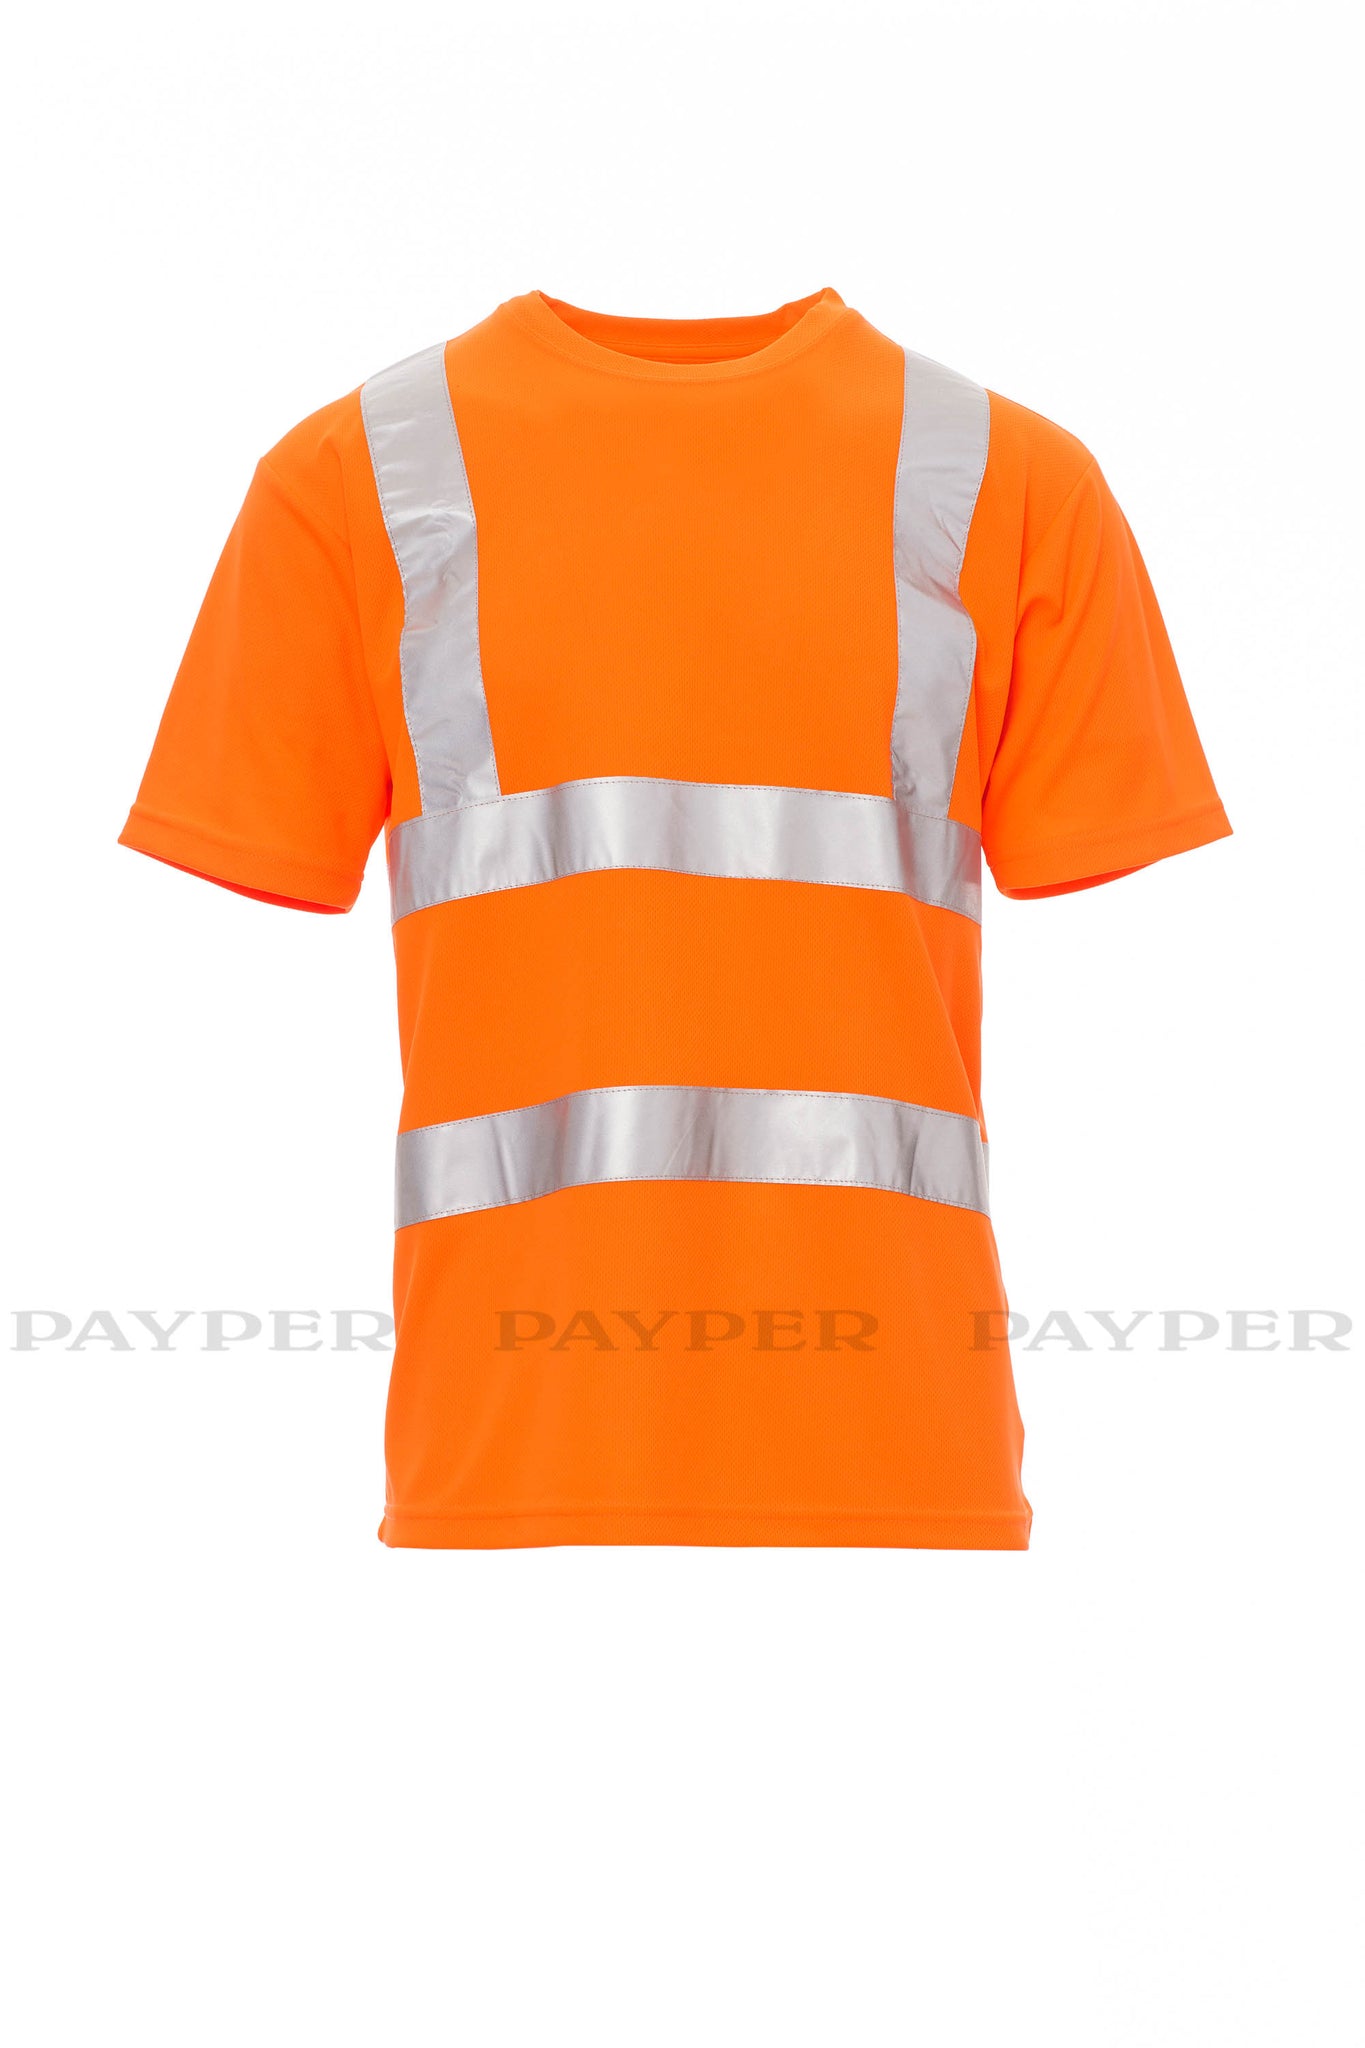 Payper Warnschutz T-Shirt | Reflektierend & Komfortabel | Größen S-5XL | Mit DRY-TECH Technologie& hoher Sichtbarkeit